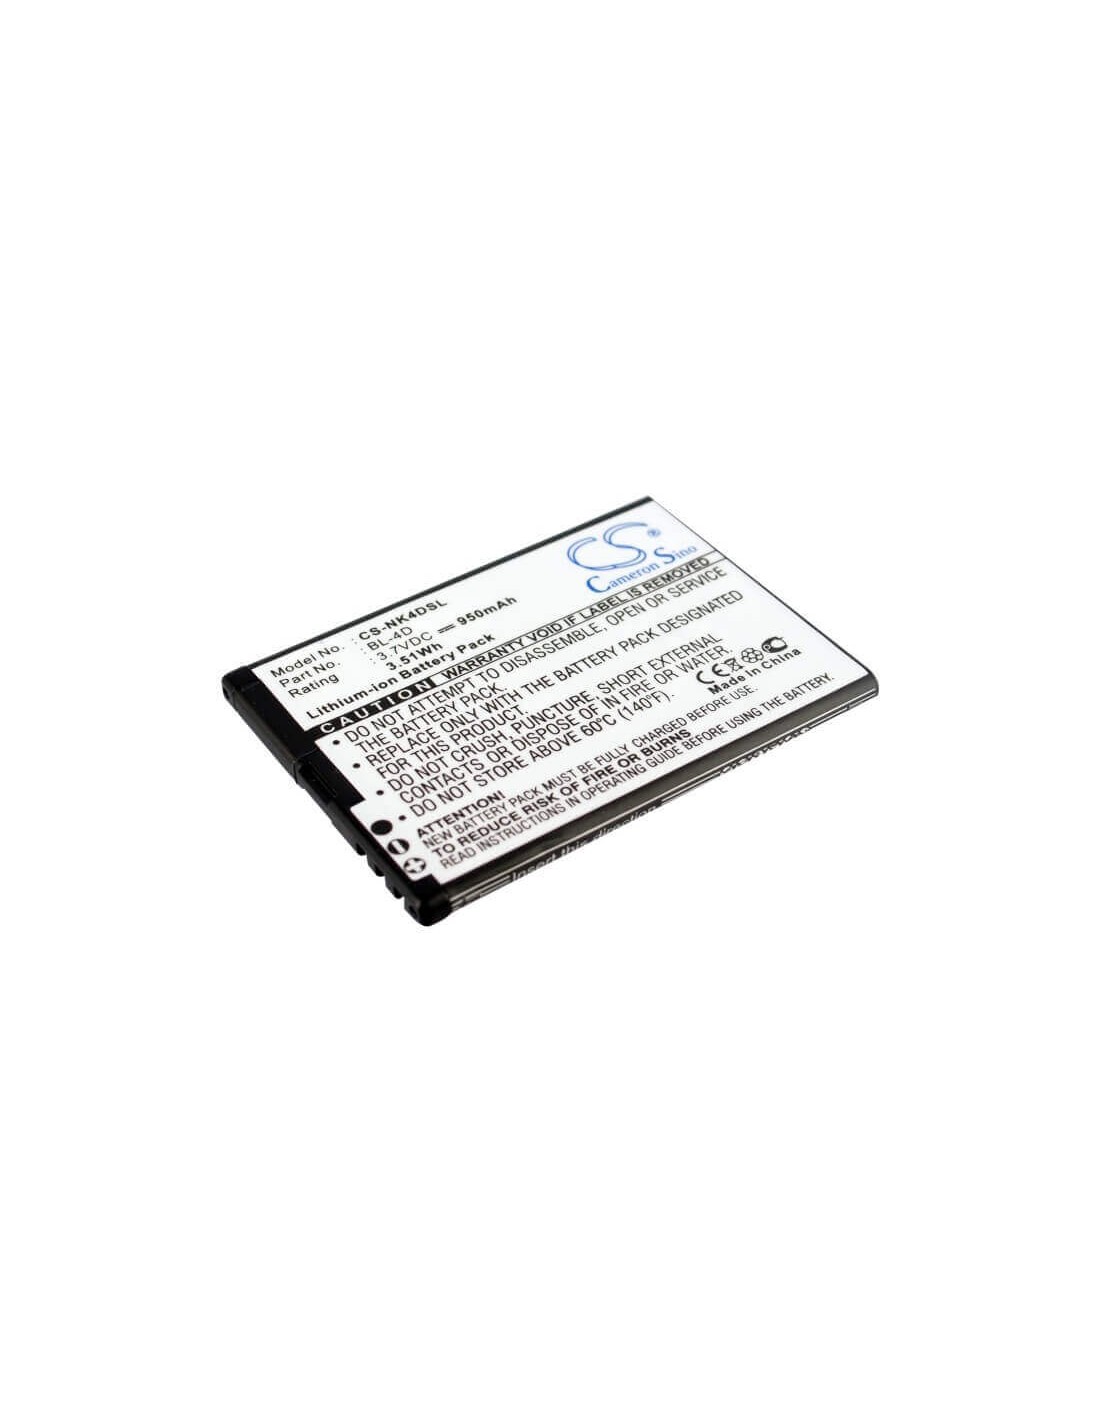 Battery for Blu Hero 2 3.7V, 950mAh - 3.52Wh